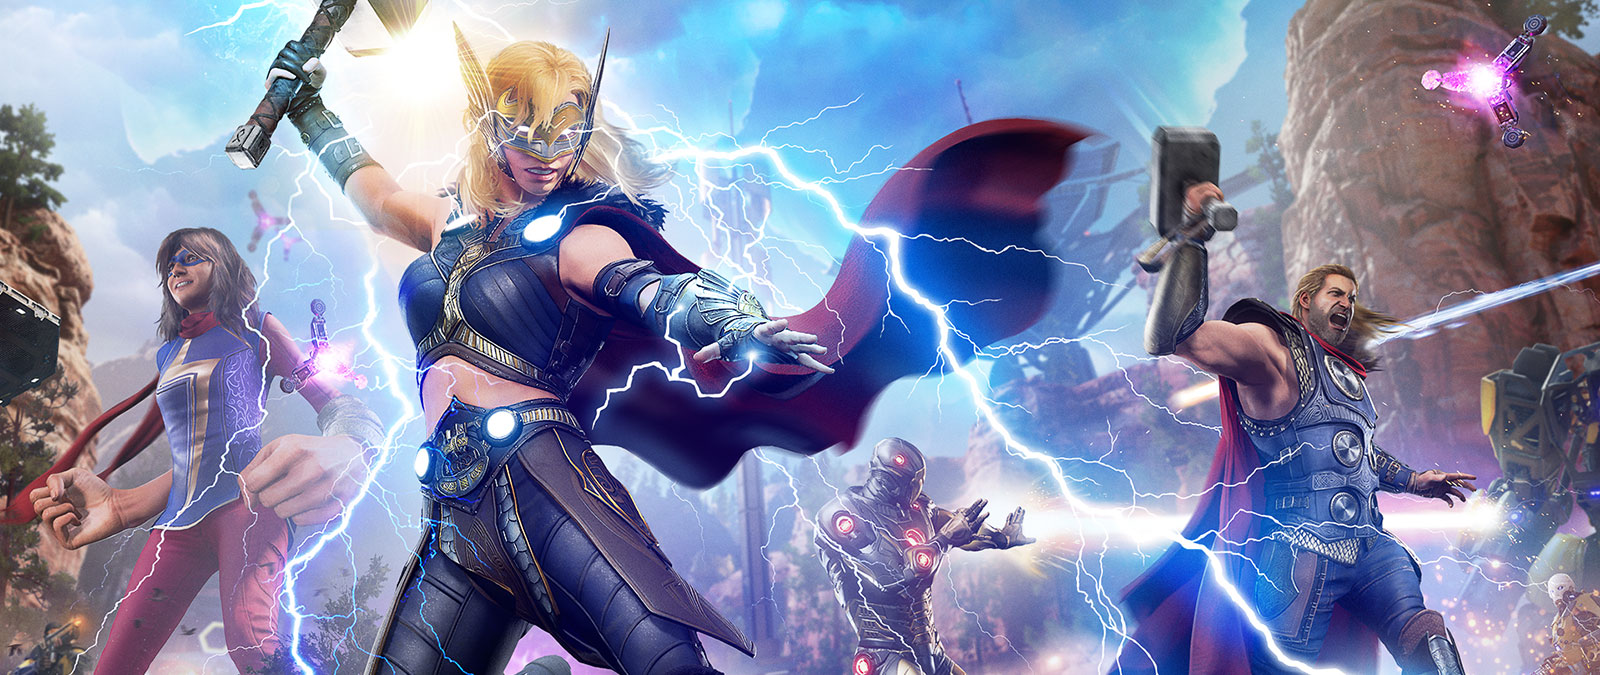 Jane Foster, la Poderosa Thor, lanza un rayo a un enemigo mecánico.